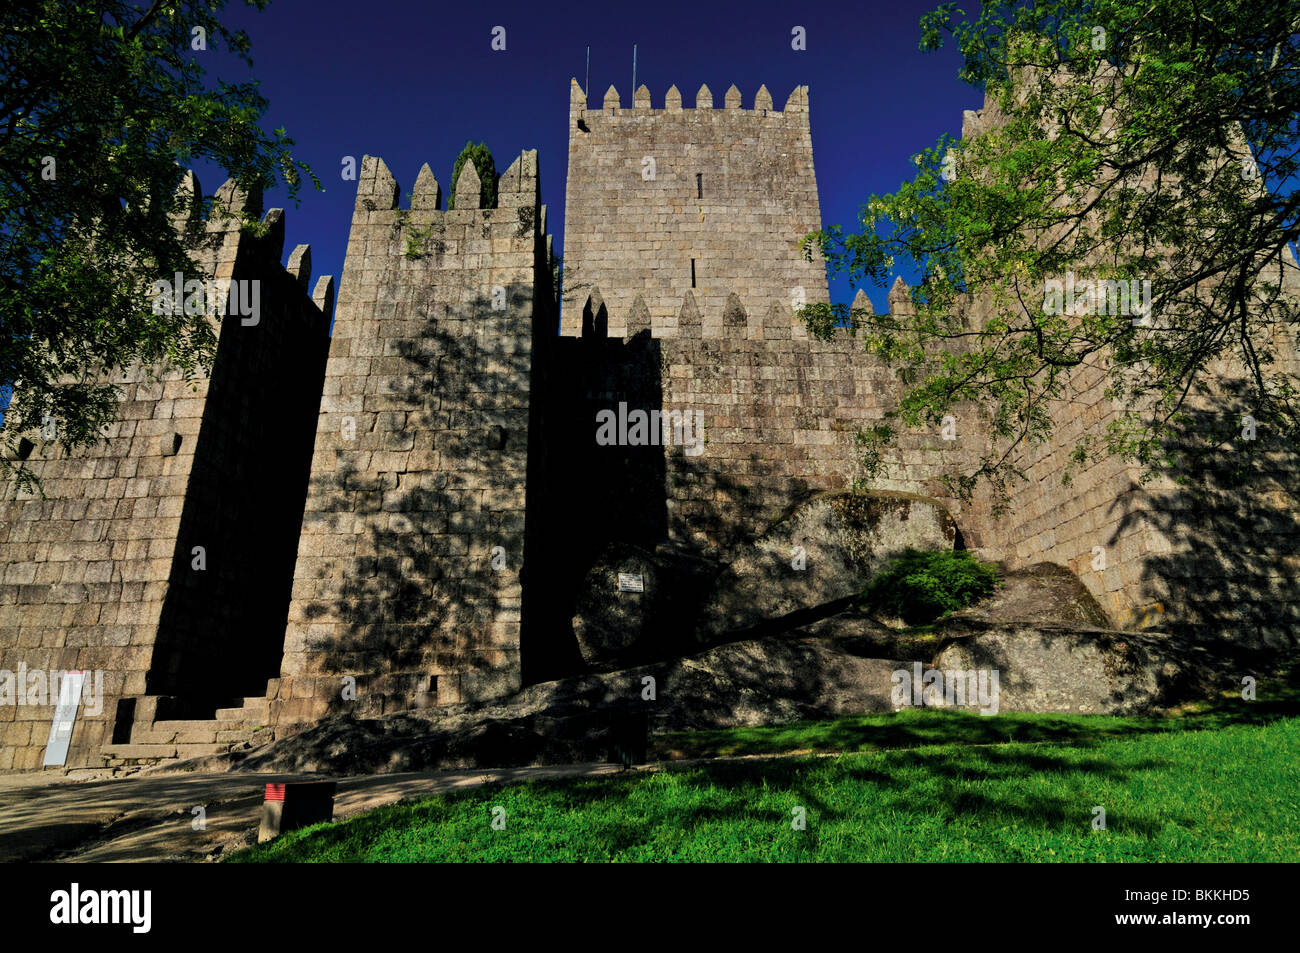 Portugal : le château de Sao Miguel de Guimaraes Banque D'Images